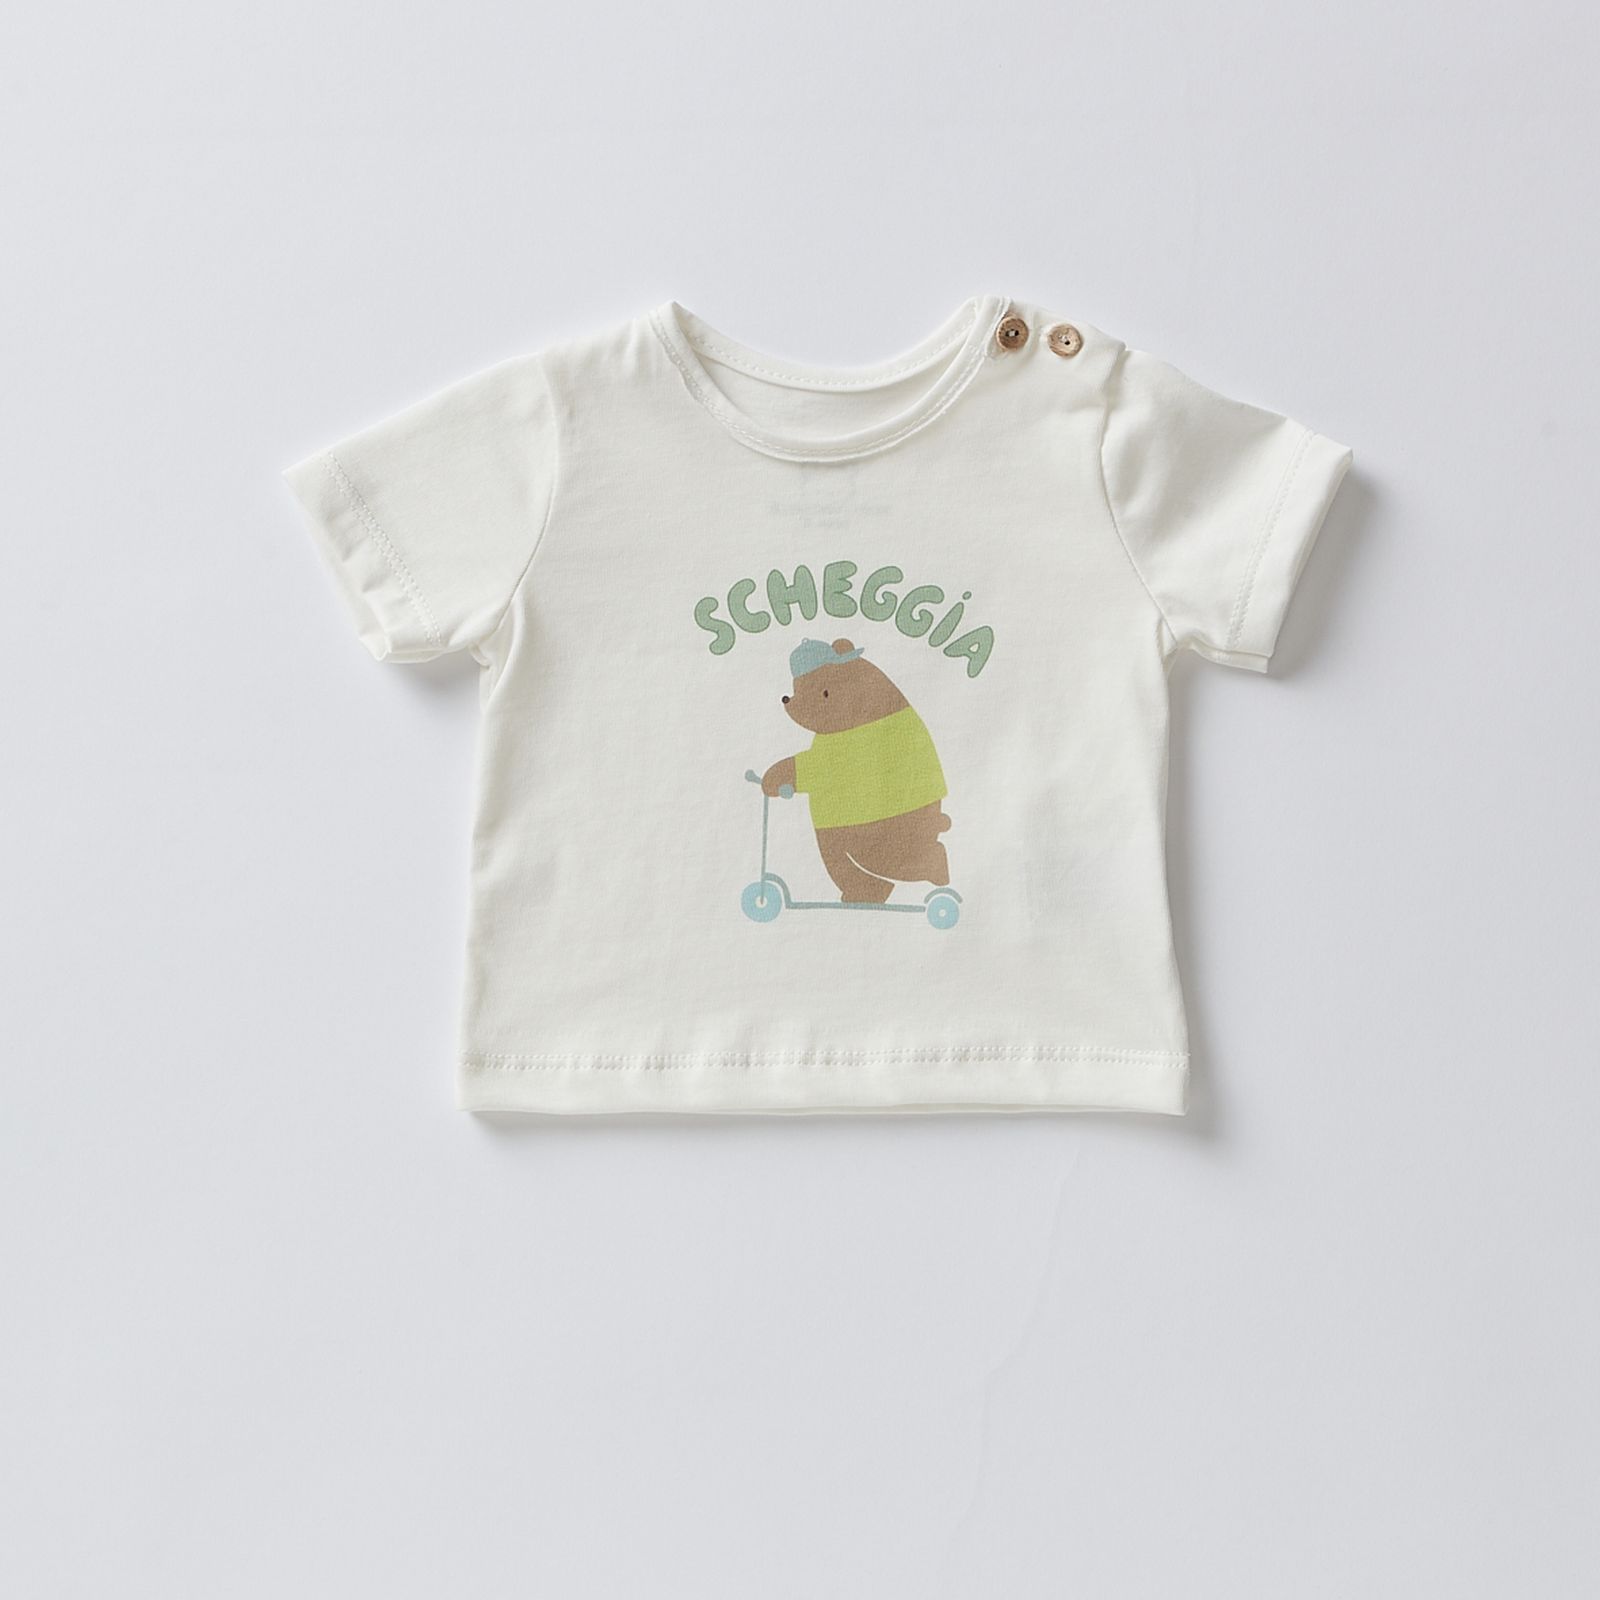 T-Shirt Stampe: Allegria e Stile in 100% Cotone per Bambini Sempre alla Moda!